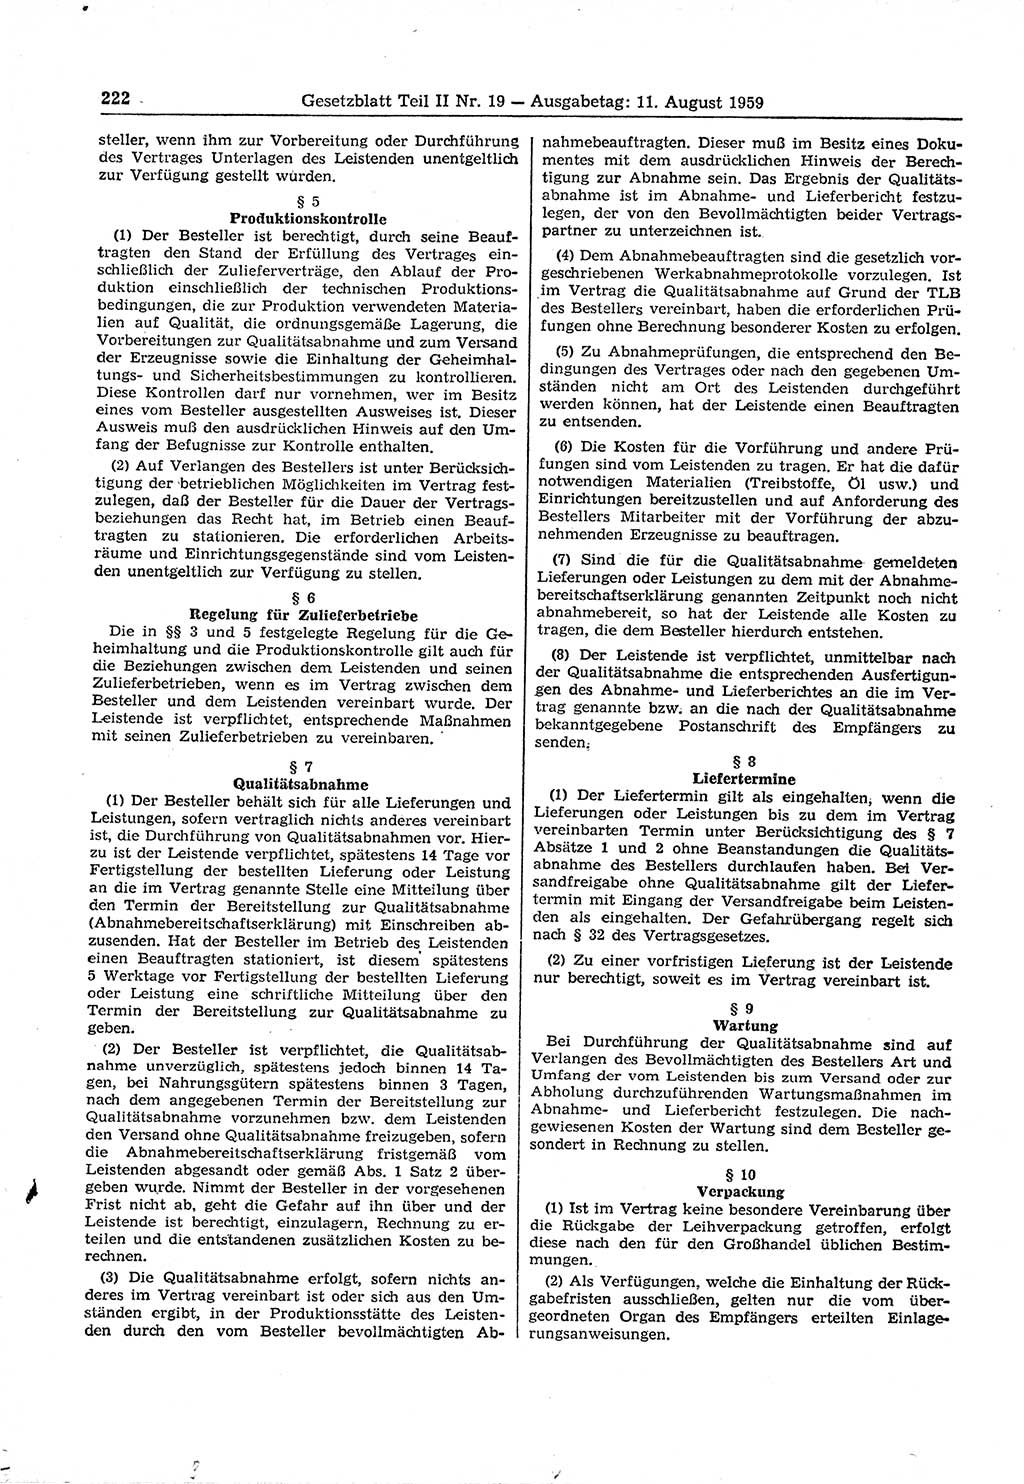 Gesetzblatt (GBl.) der Deutschen Demokratischen Republik (DDR) Teil ⅠⅠ 1959, Seite 222 (GBl. DDR ⅠⅠ 1959, S. 222)